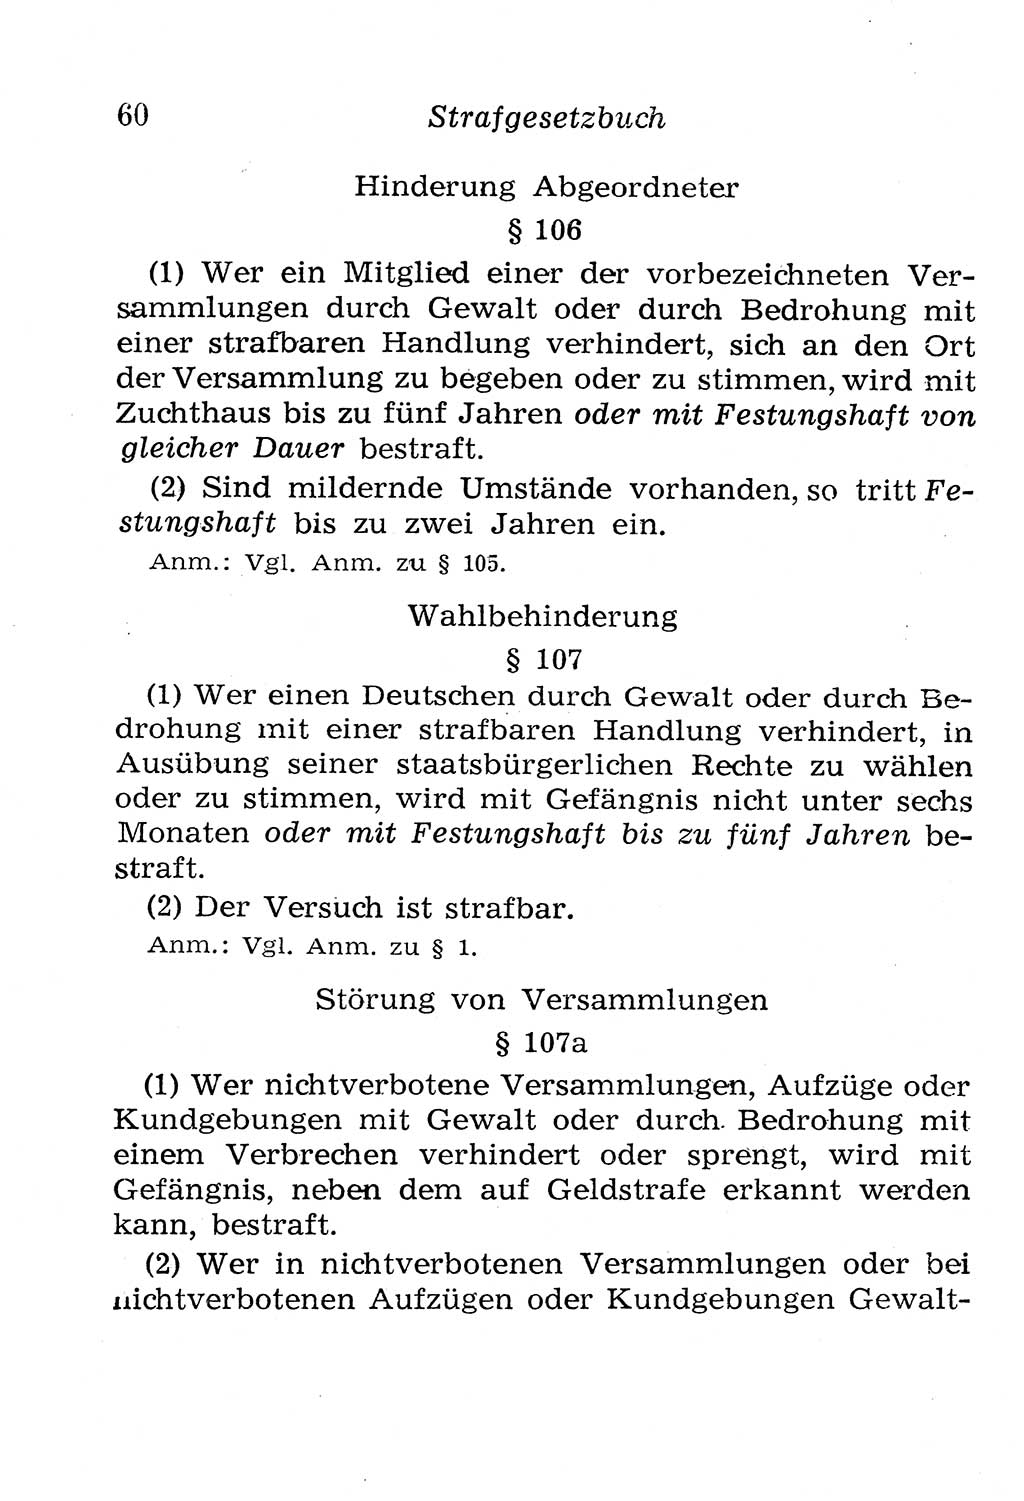 Strafgesetzbuch (StGB) und andere Strafgesetze [Deutsche Demokratische Republik (DDR)] 1958, Seite 60 (StGB Strafges. DDR 1958, S. 60)